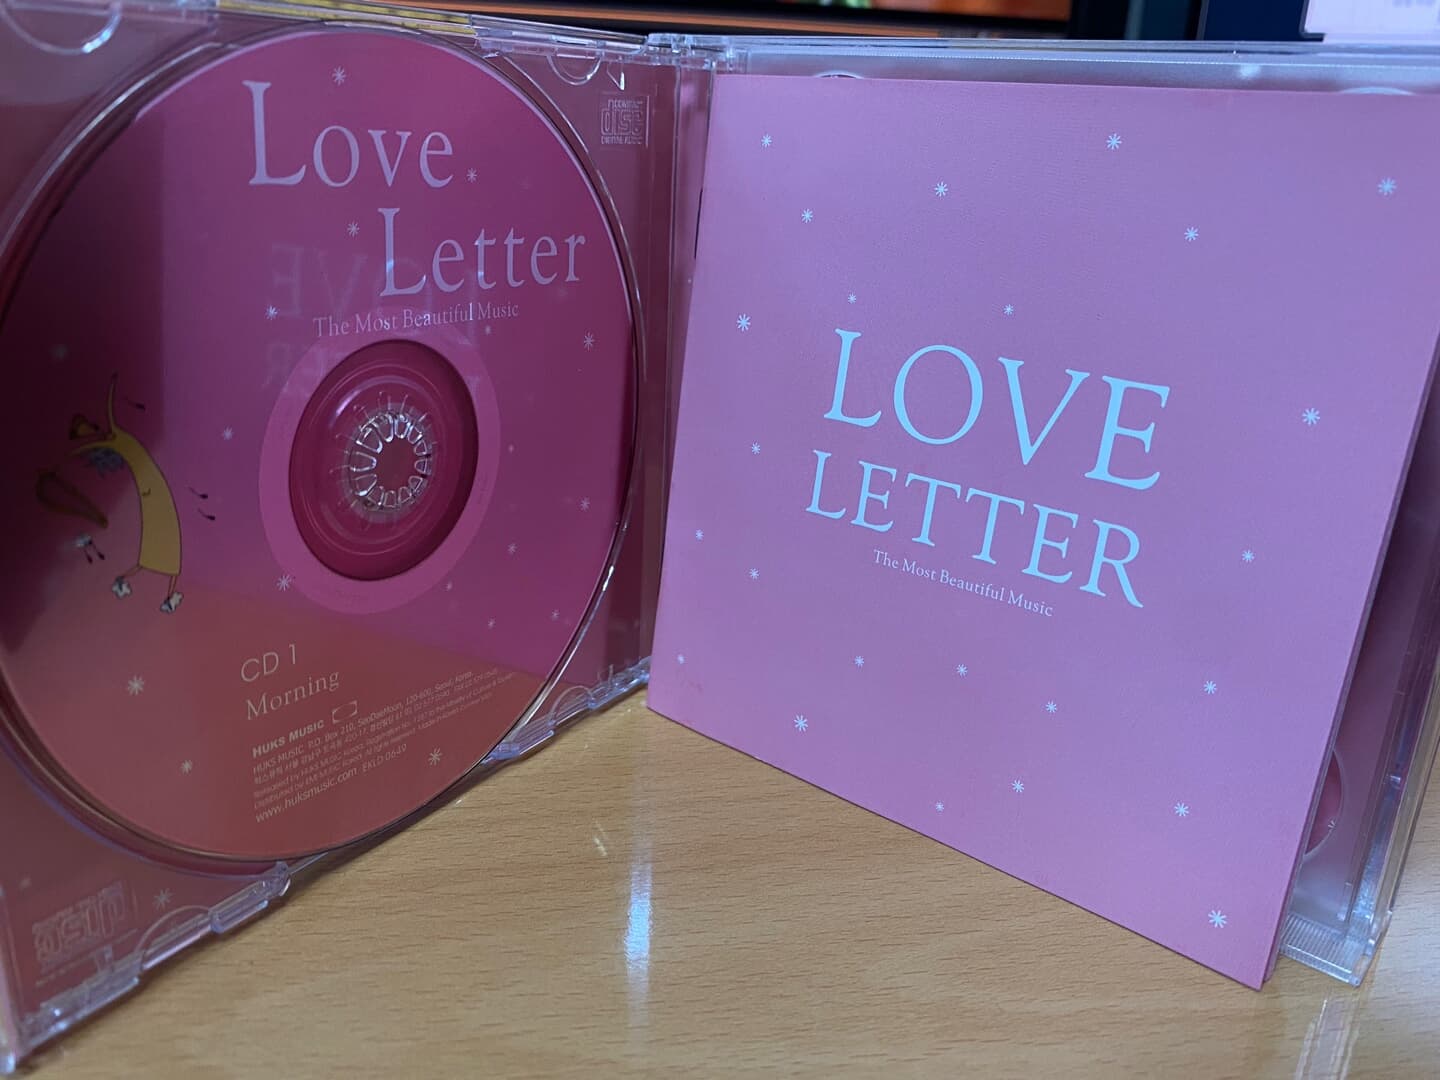 러브 레터 - Love Letter The Most Beautiful Music 2Cds